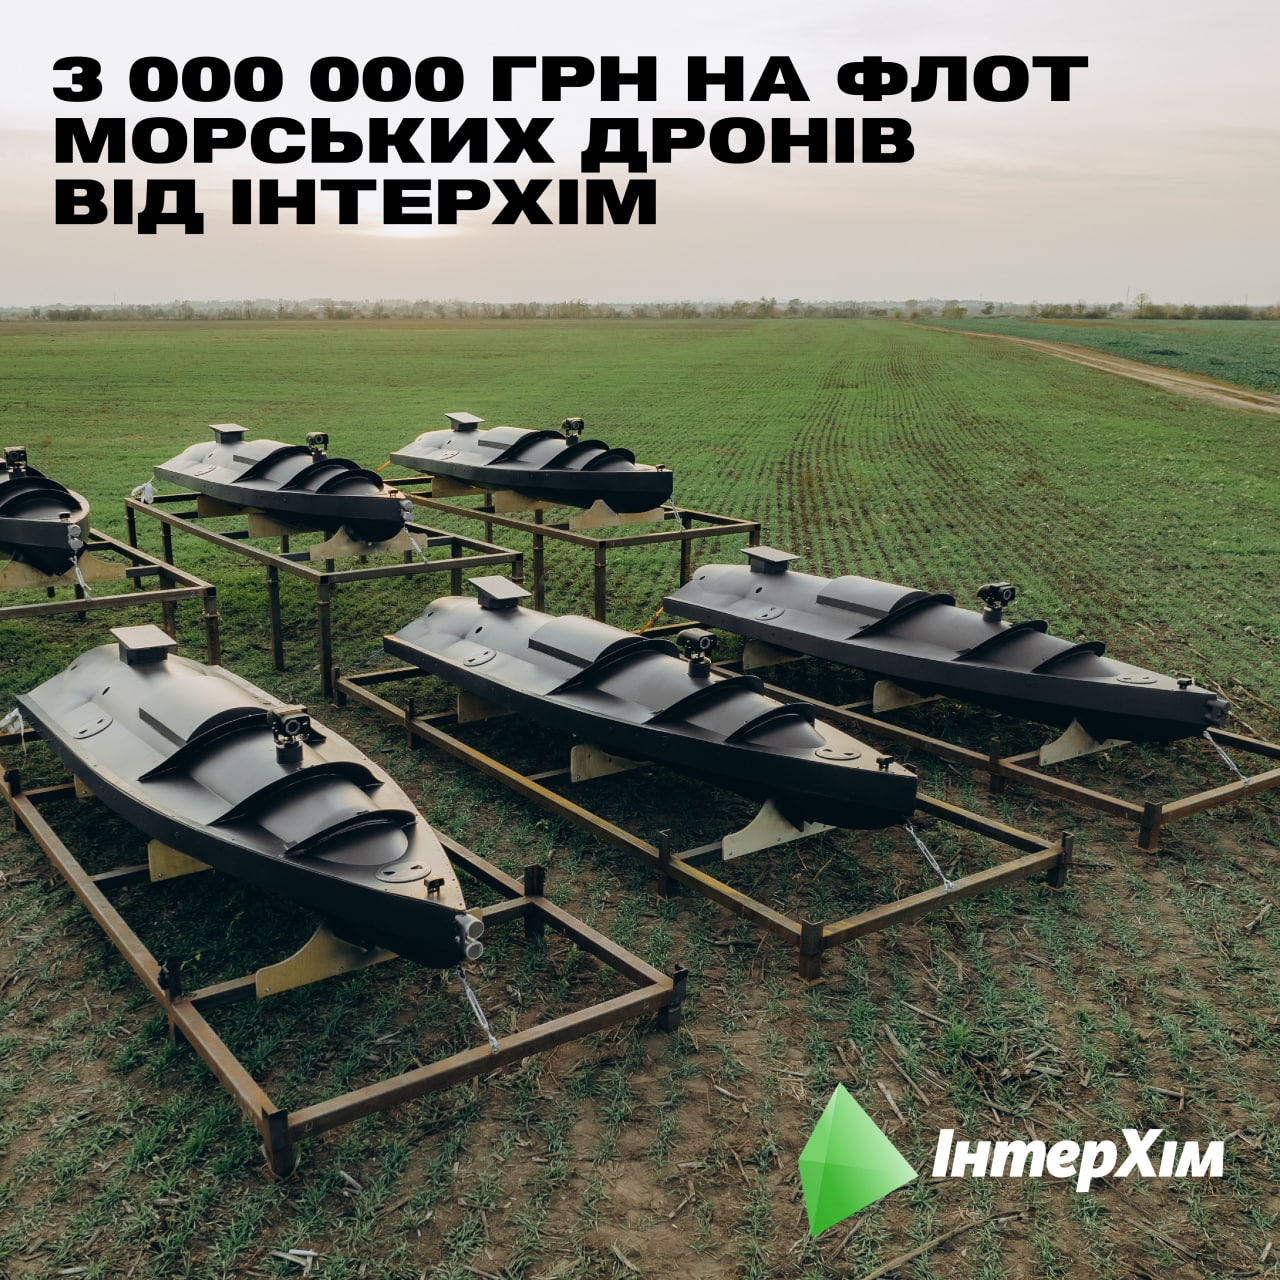 Український флот морських дронів!